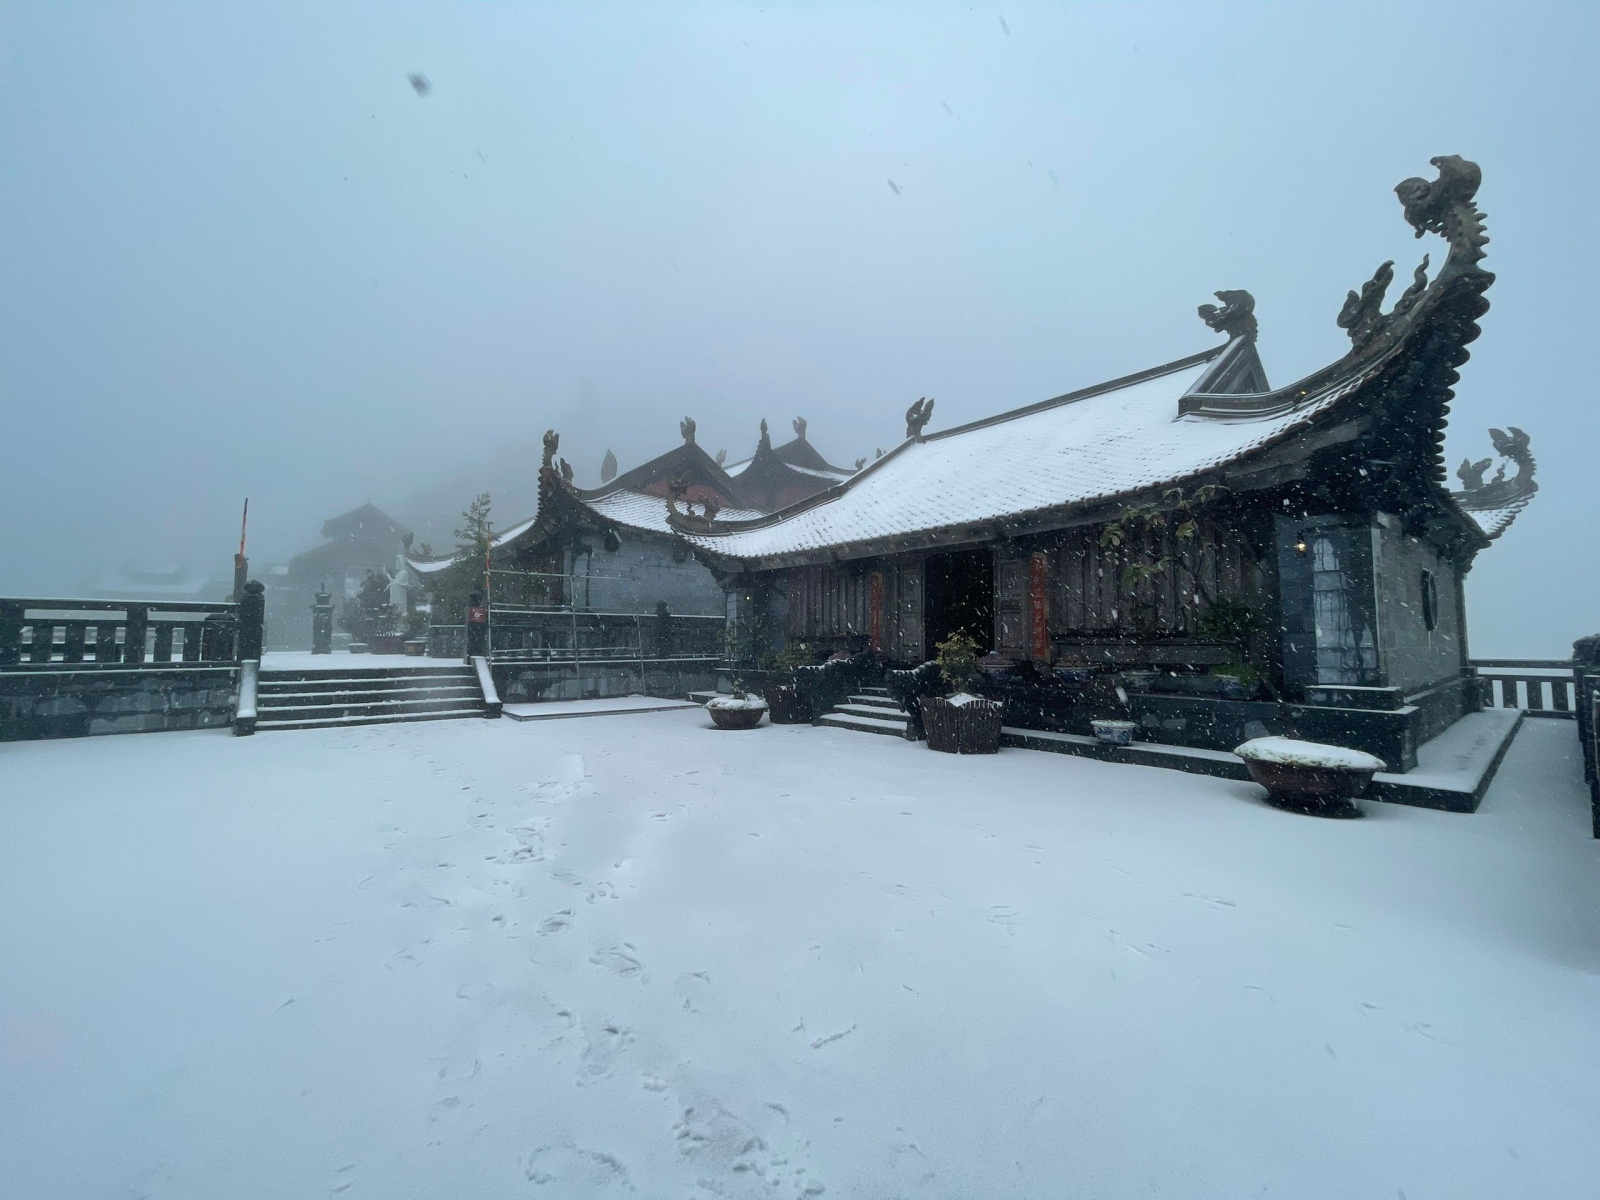  Nét chùa đẹp thoát tục trong màn băng tuyết đang phủ kín Fansipan